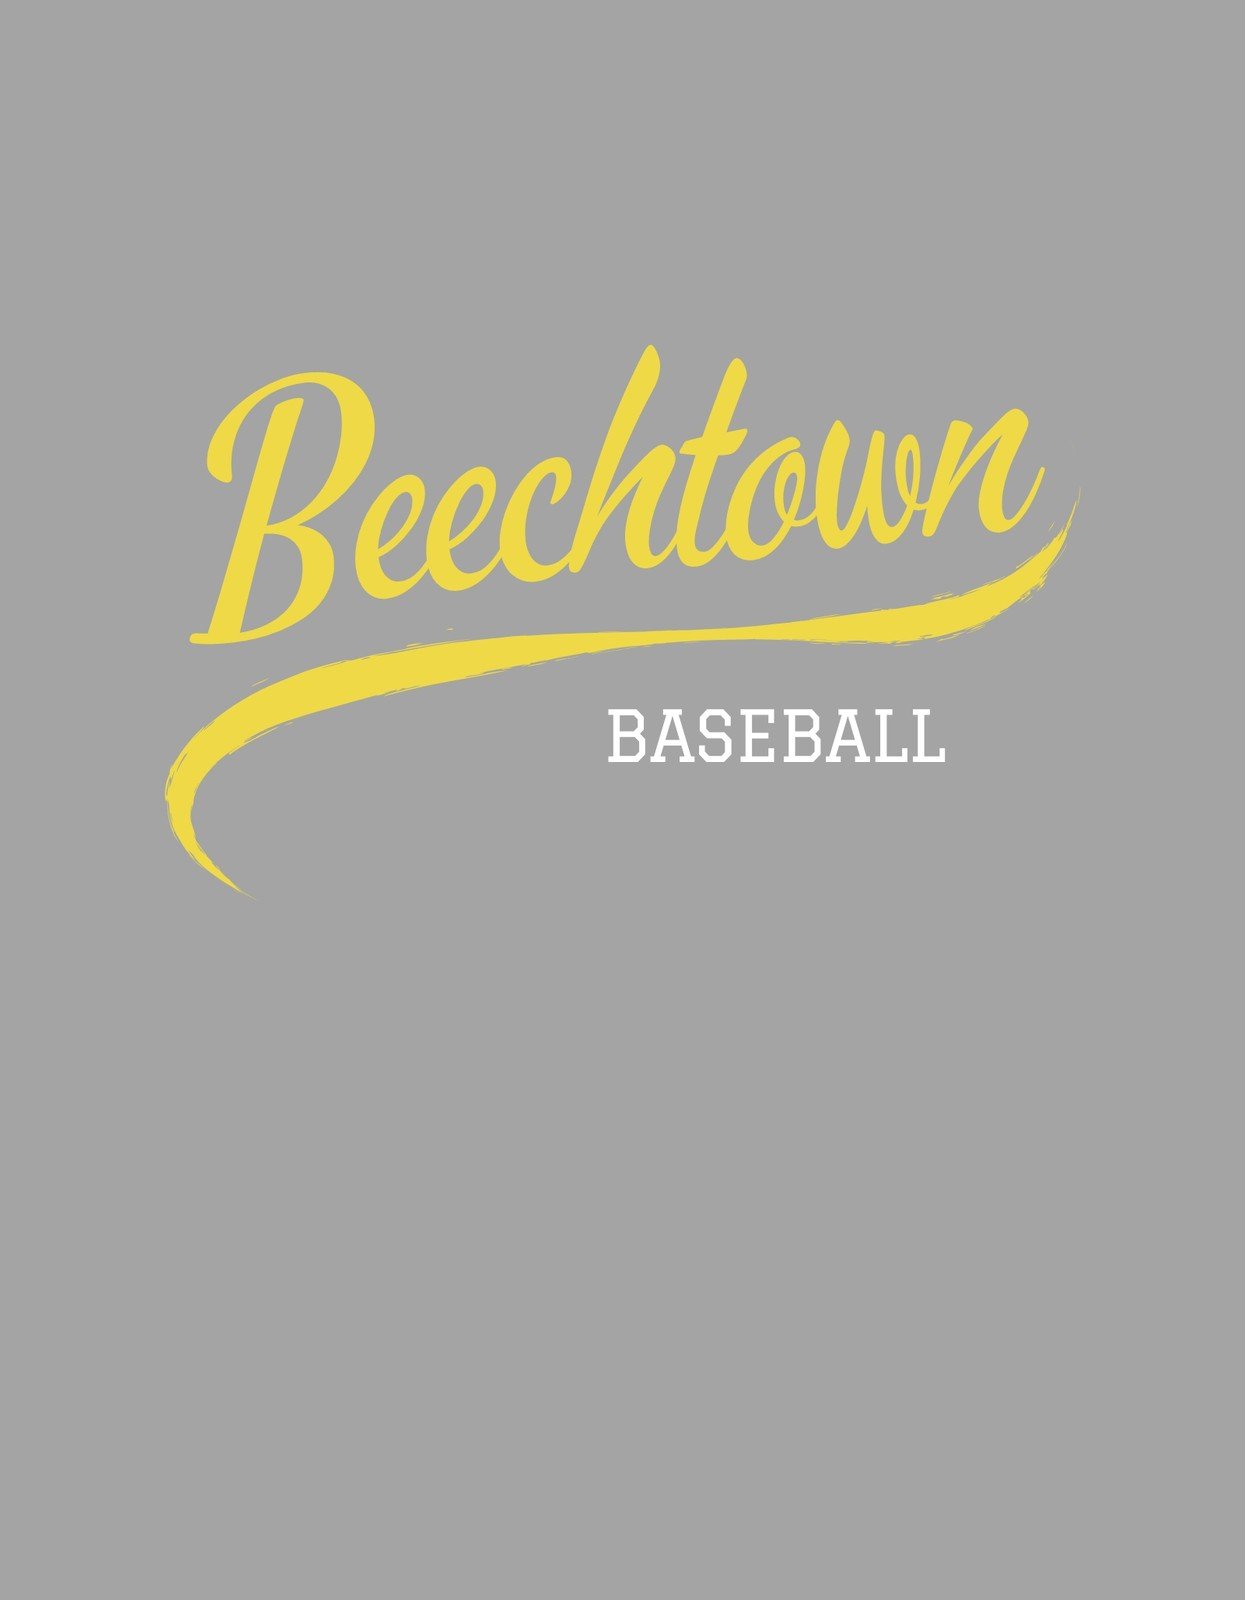 State Baseball Shirt Design  Tournament Shirt Design Template